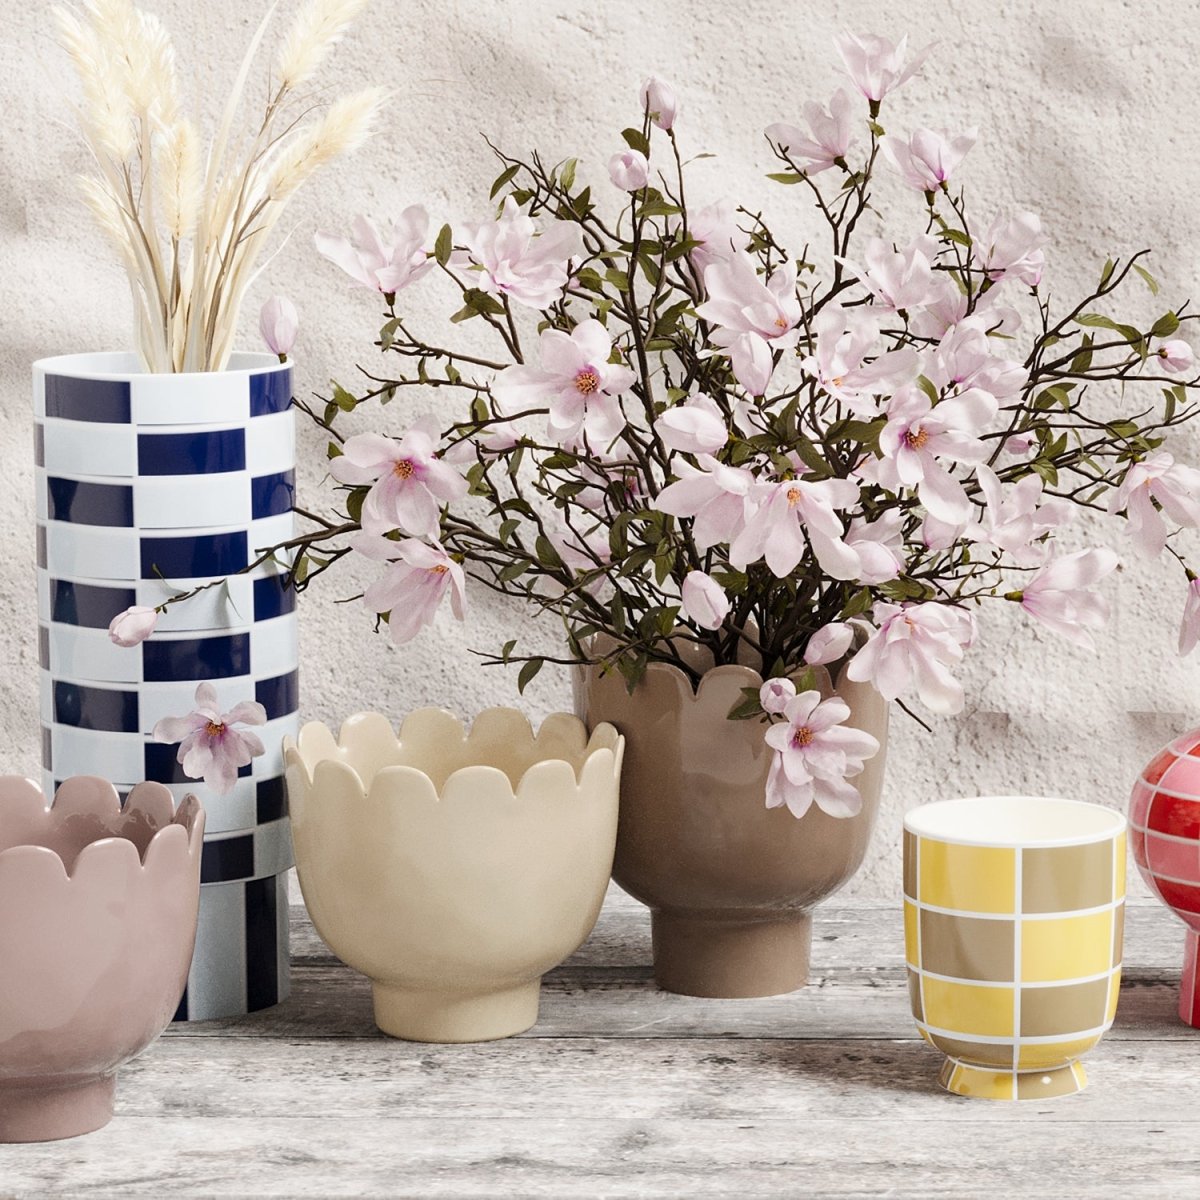 Personnlaisez votre déco grâce au vase pot à fleurs  forme tulipe en céramique crème - Potiron Paris, accessoires déco design pas chère pour la maison de style contemporain